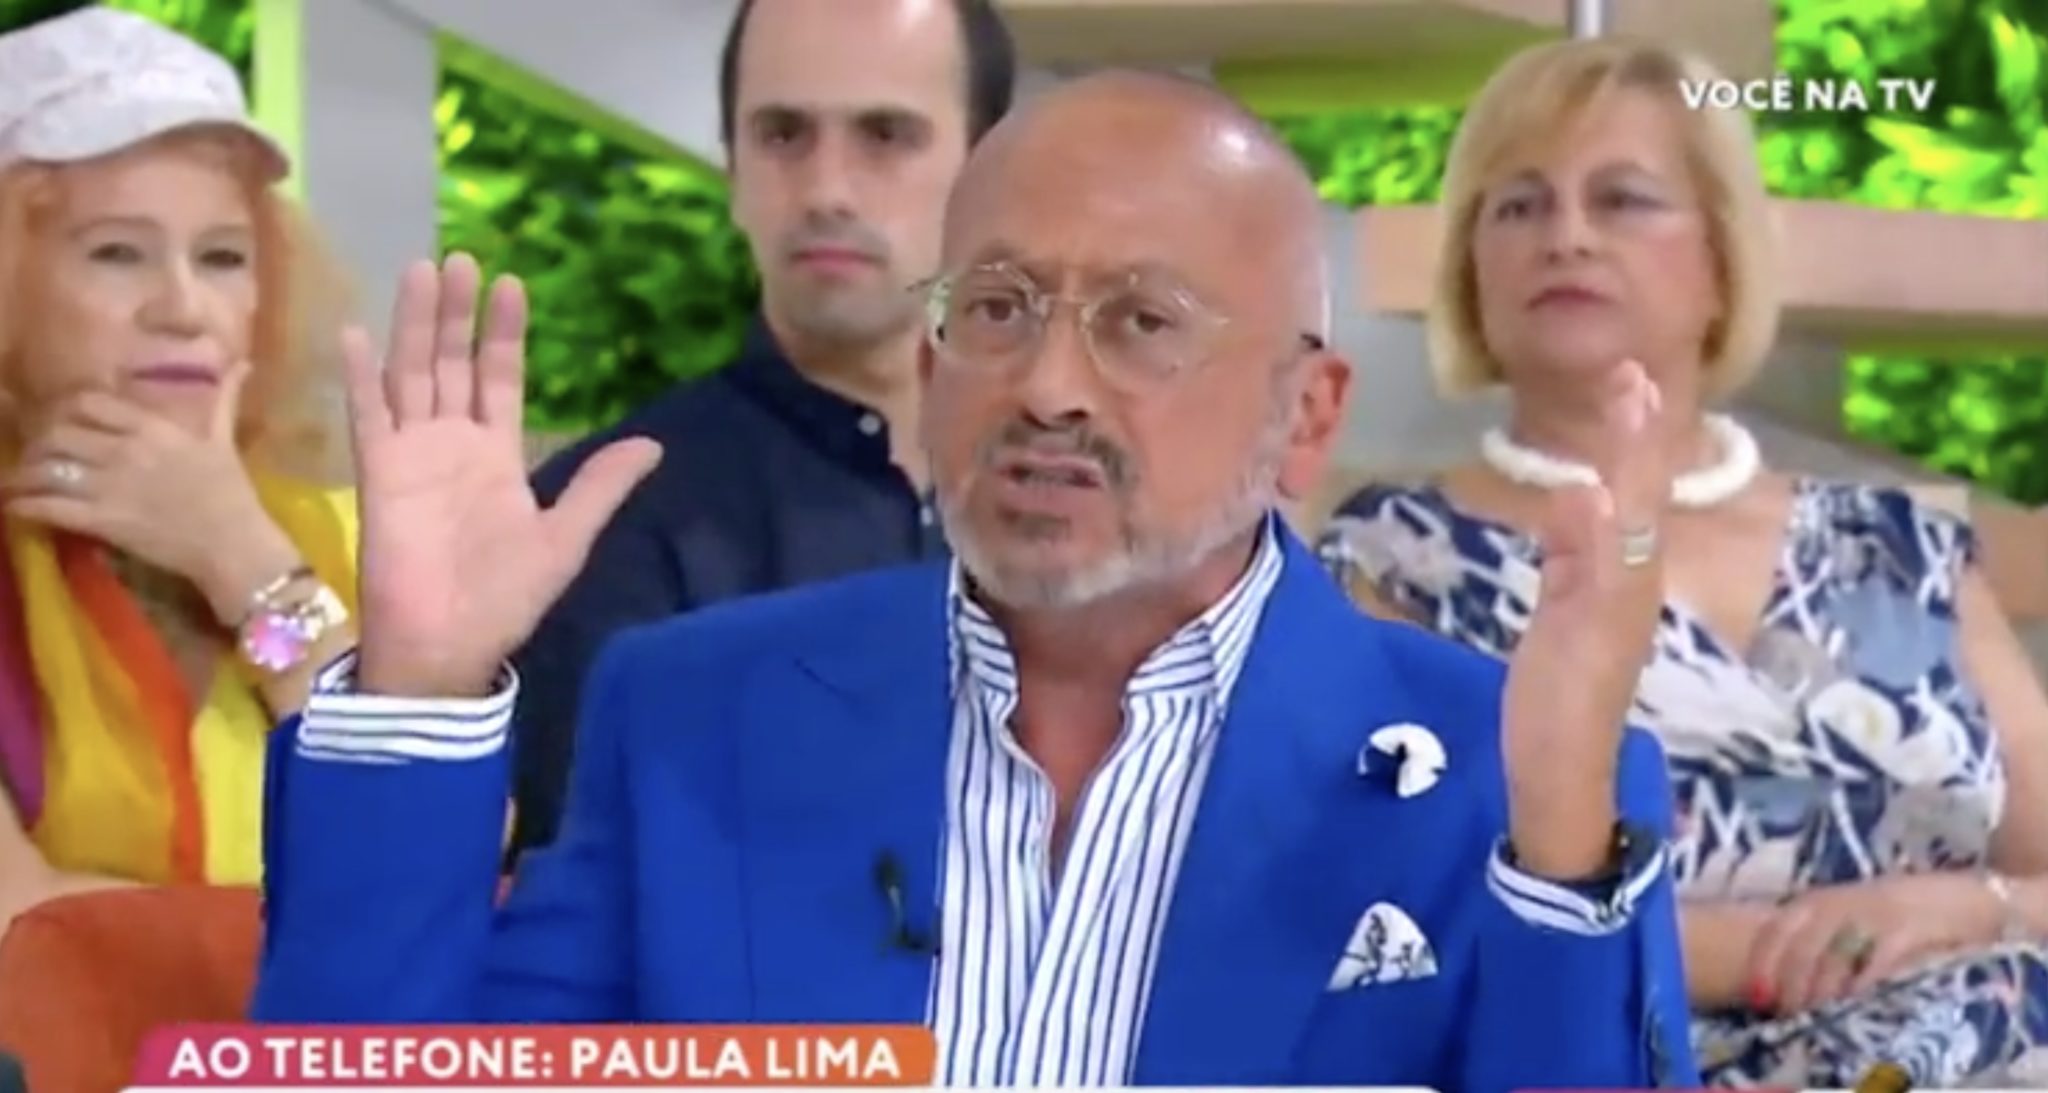 manuel luis goucha voce na tv "Calma!": Goucha exalta-se com assistentes de 'Você na TV'